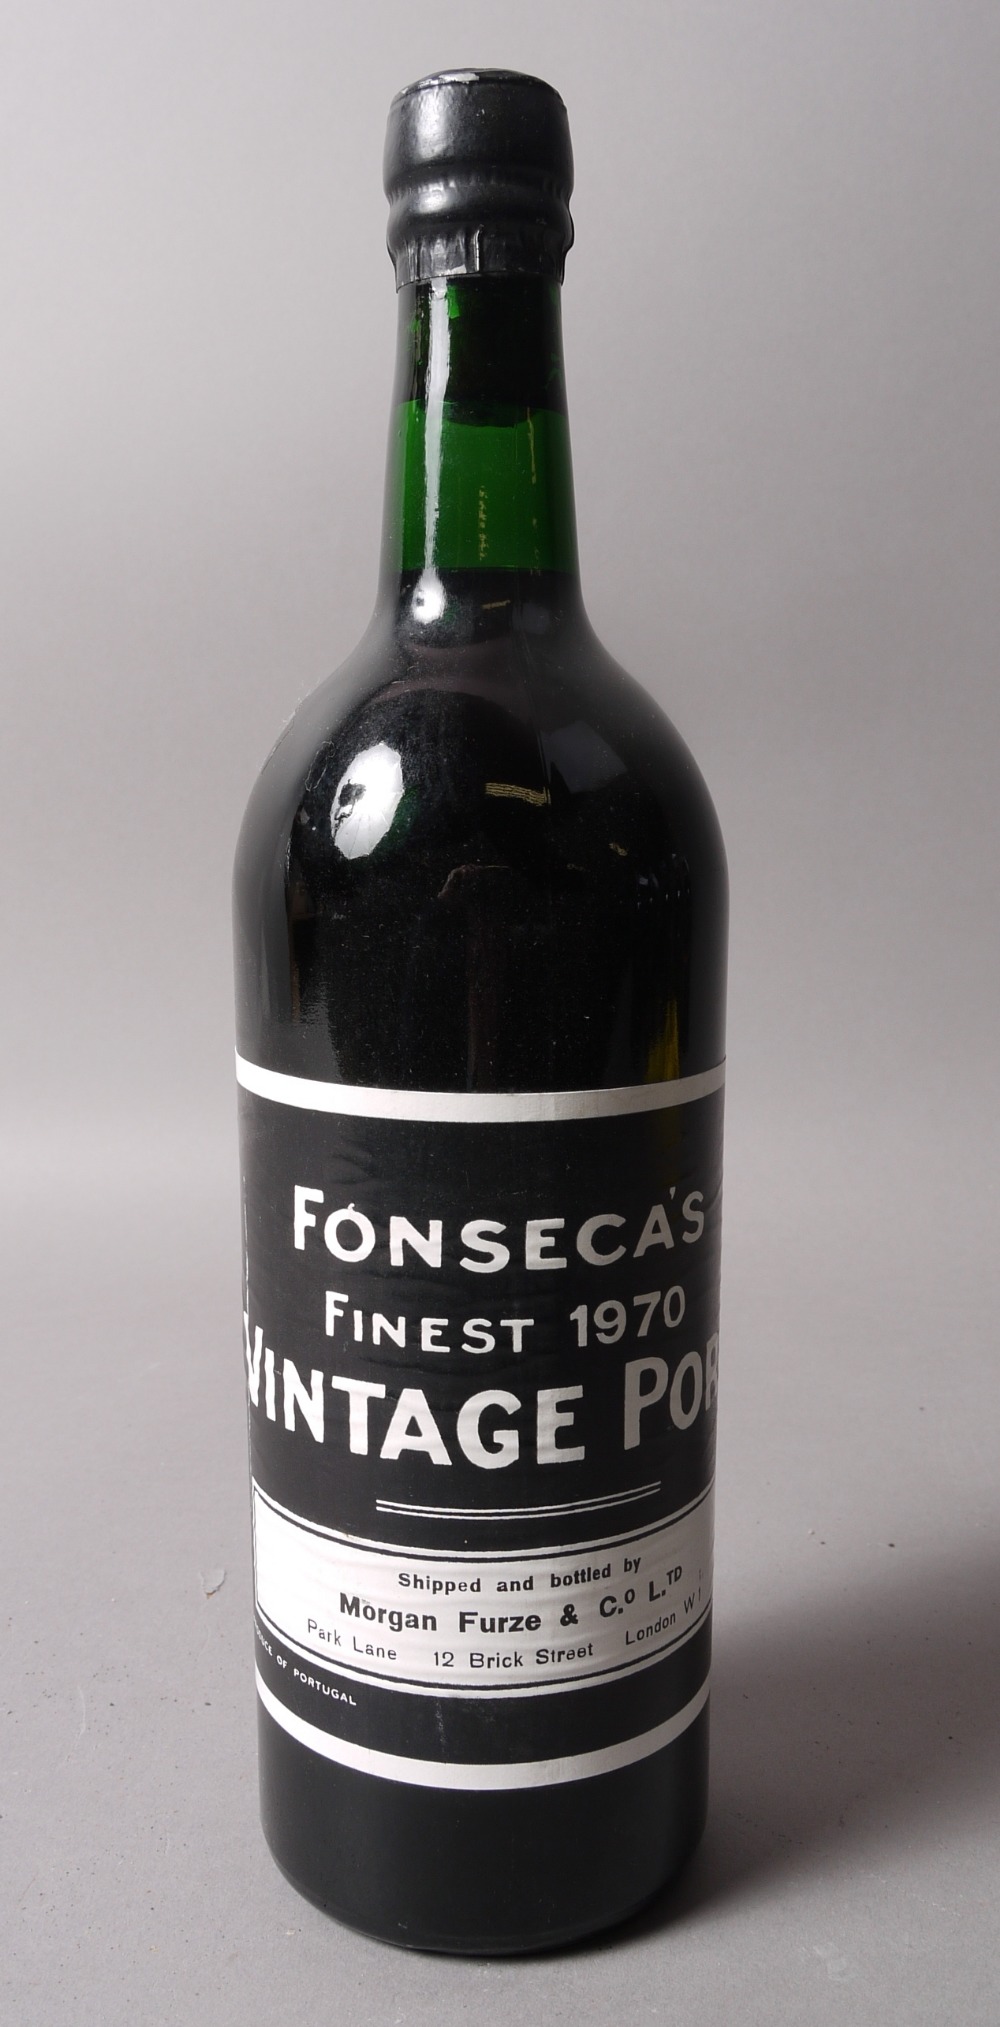 Fonseca's 1970 Vintage Port, UK bottled, Morgan Furze & Co.